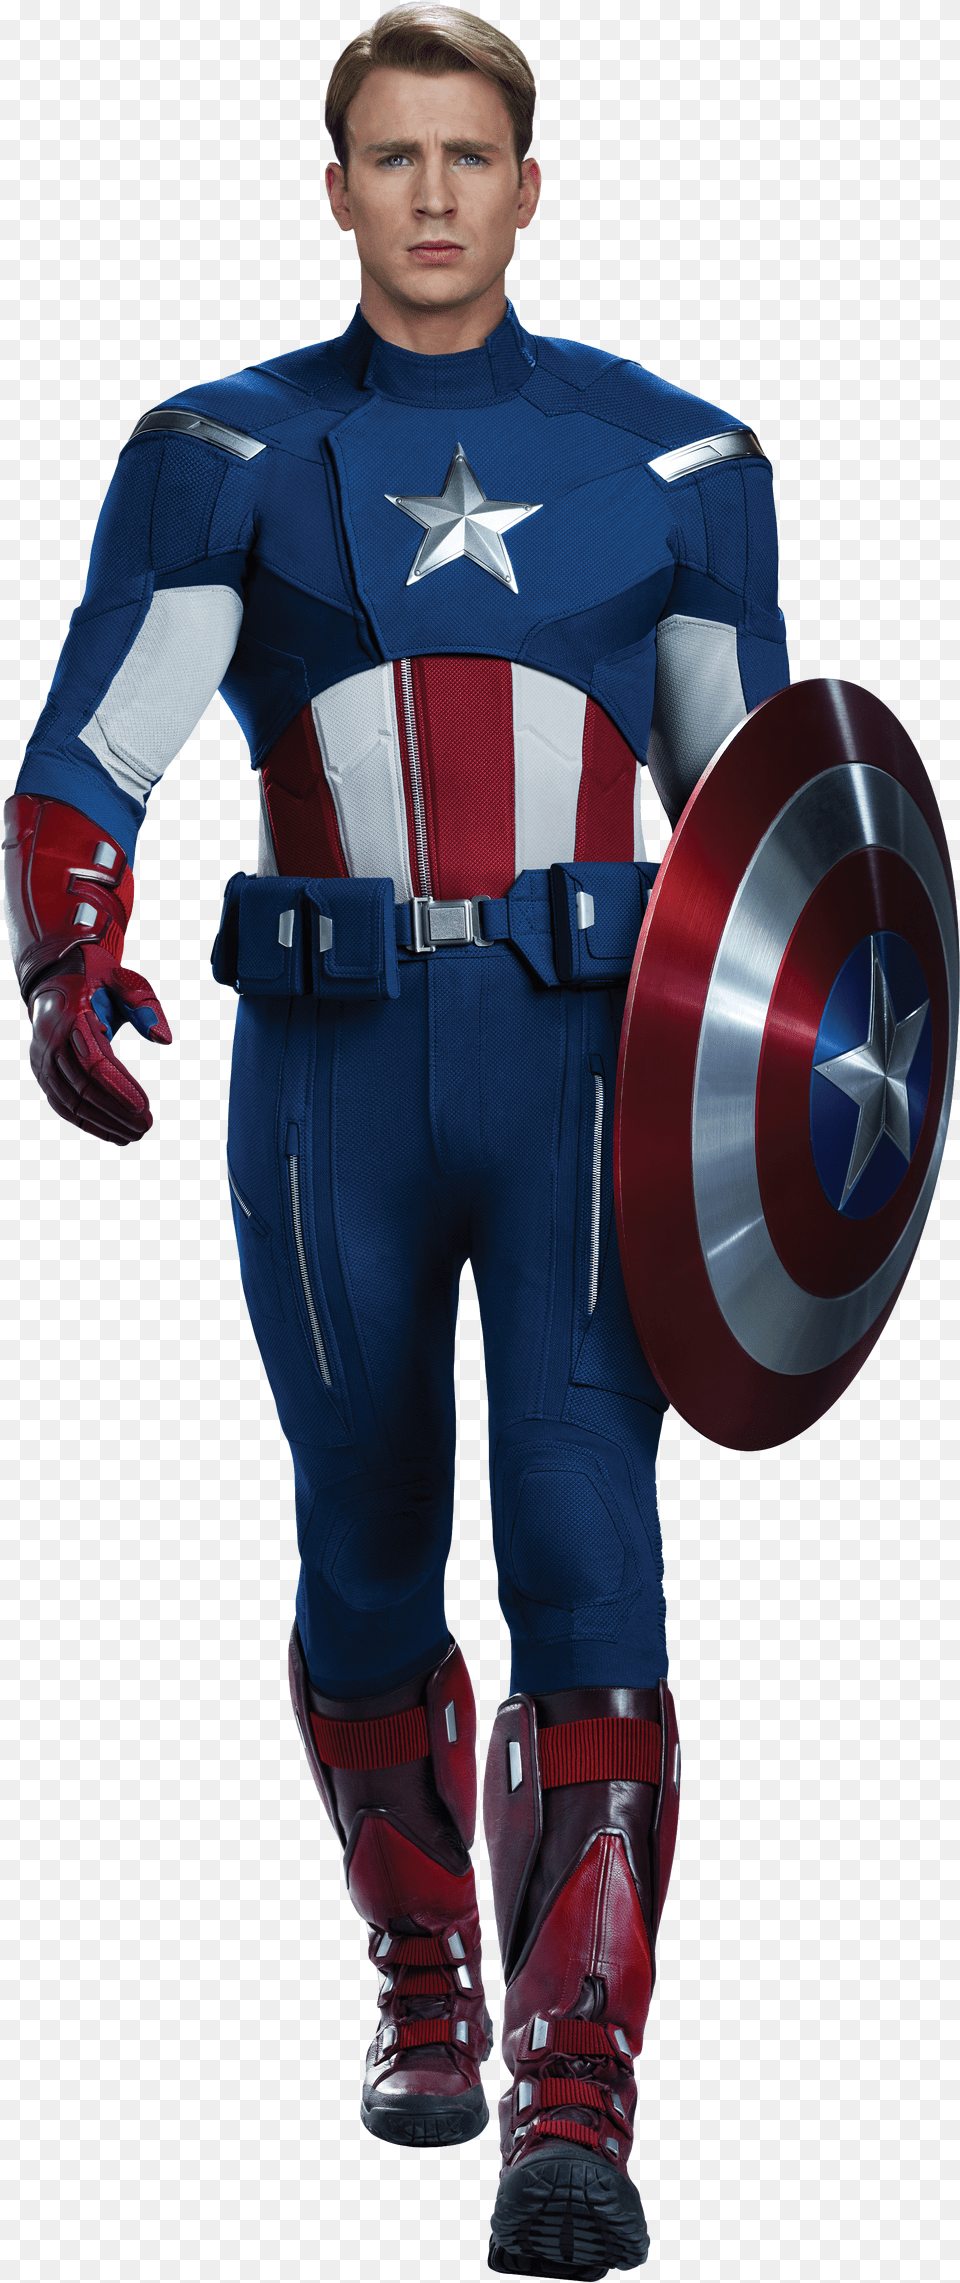 The First Avenger Bucky Barnes Chris Evans The Avengers Captain America Avengers 1 Suit Png